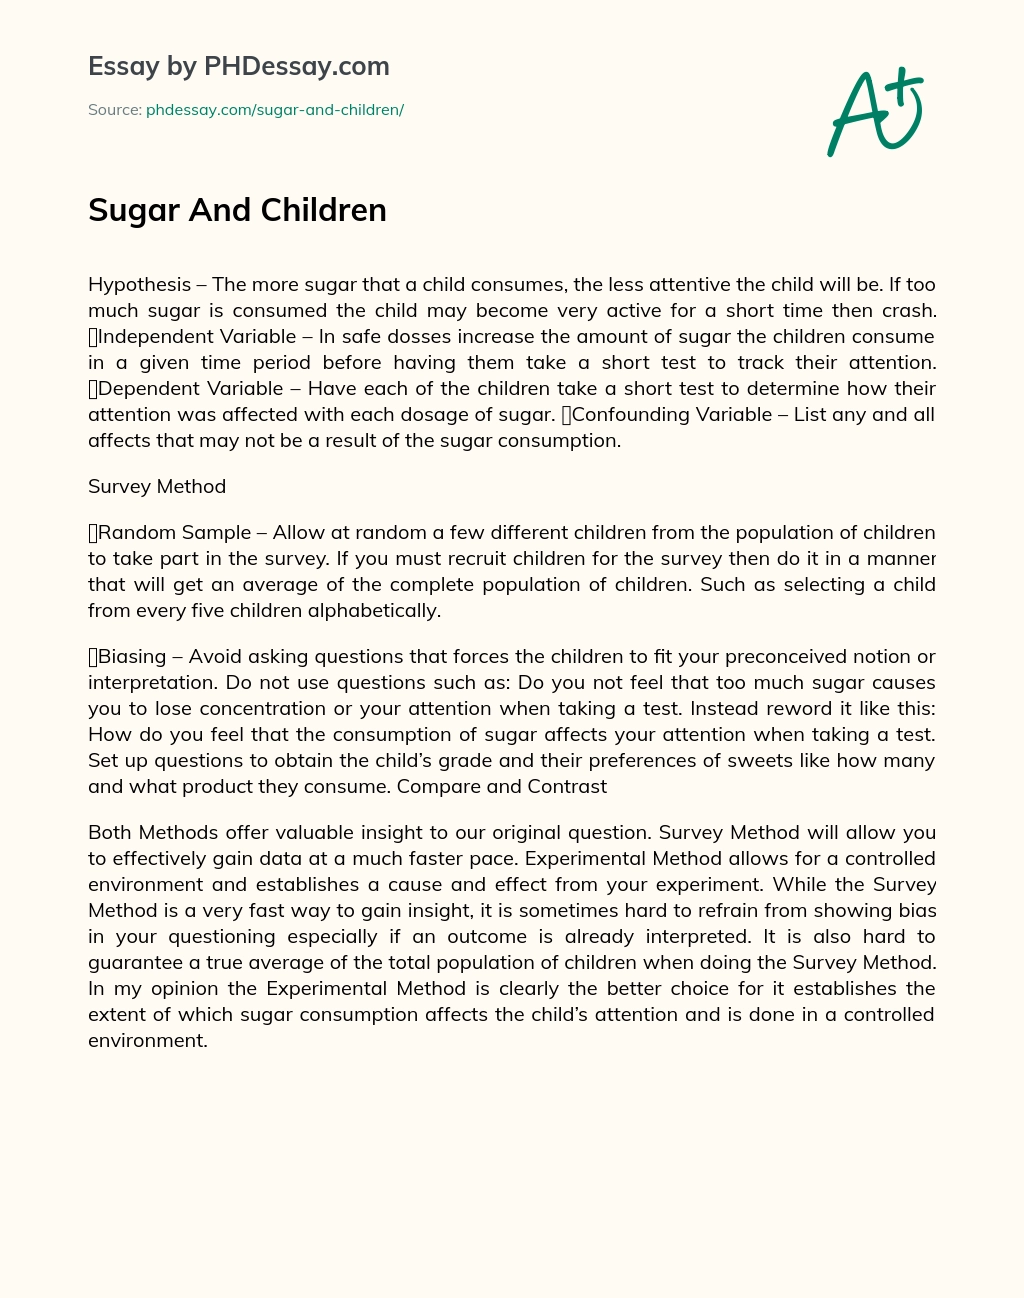 Sugar And Children essay